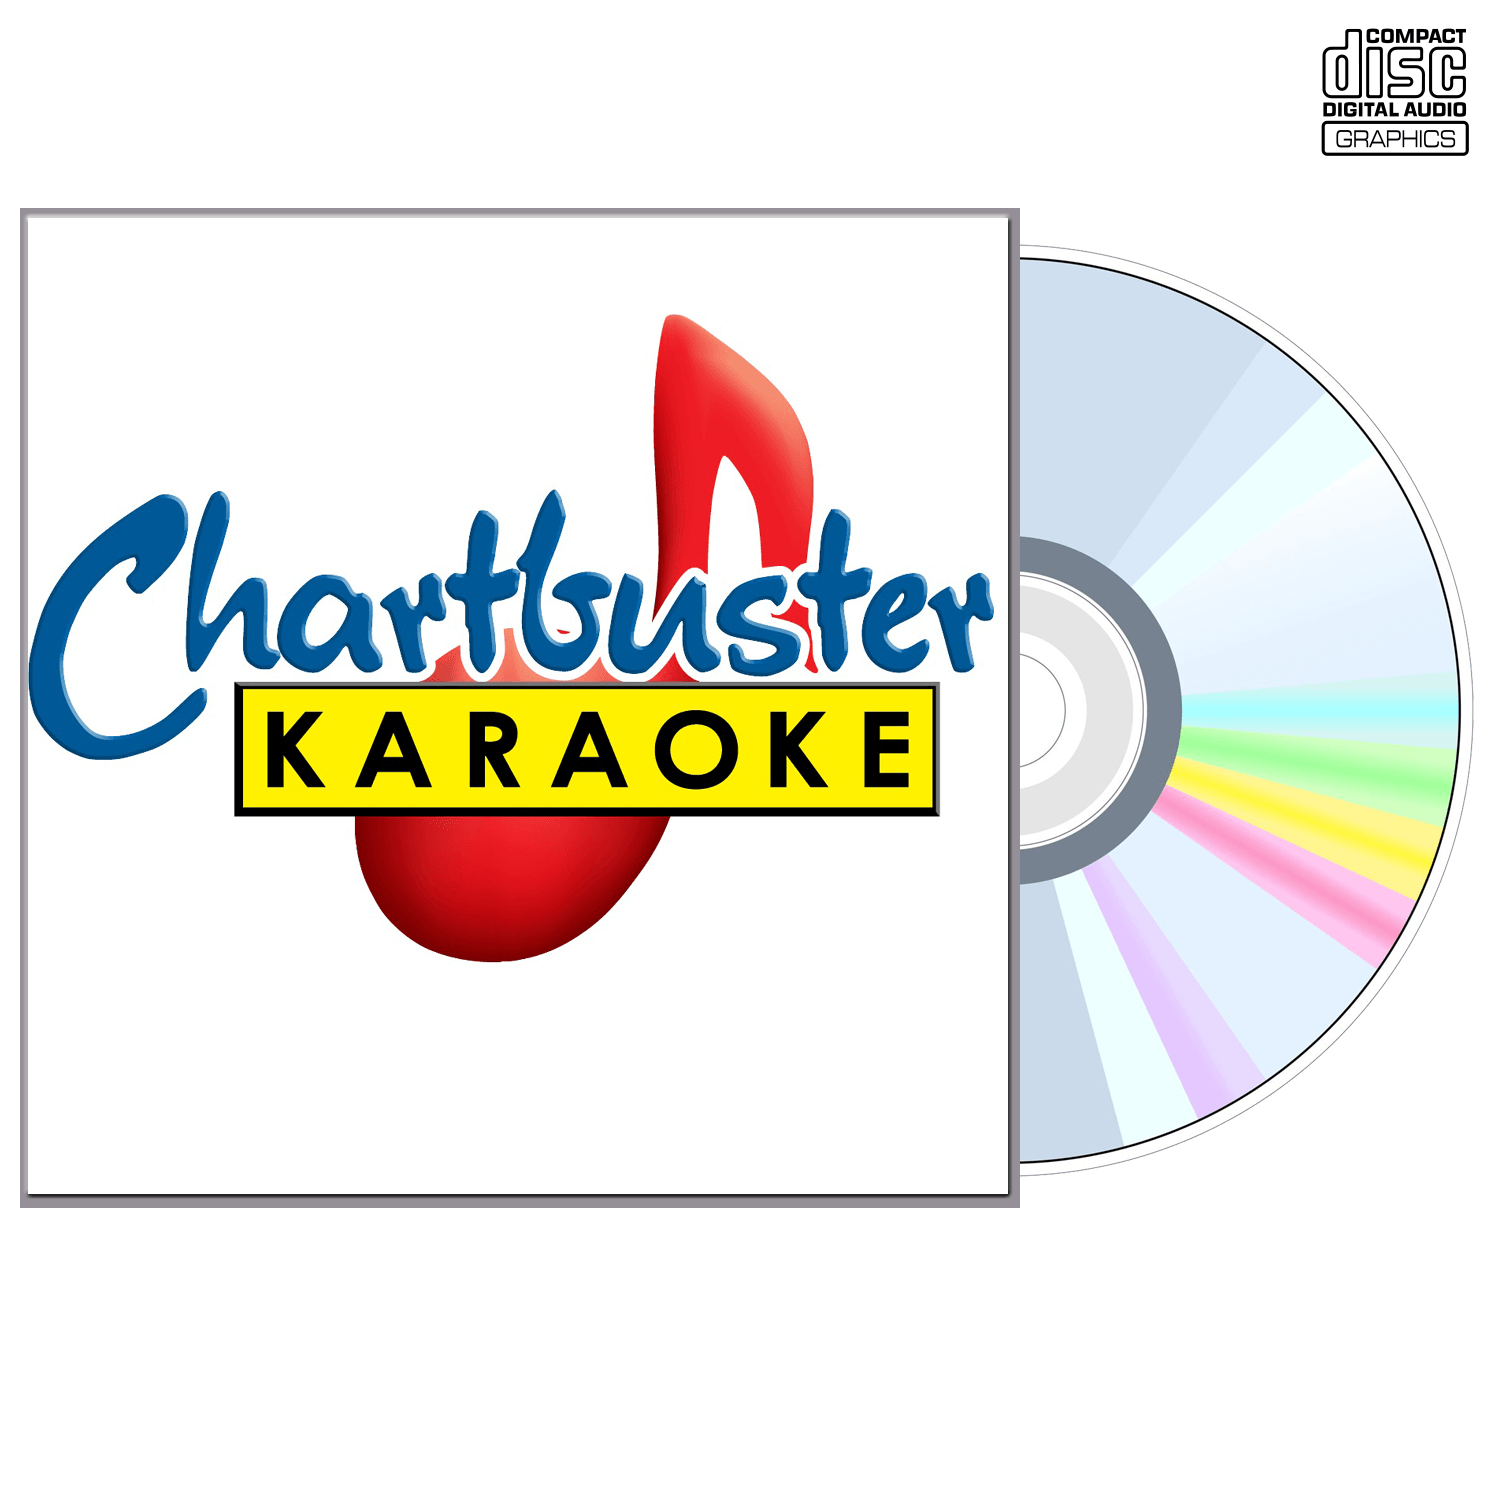 Frank Sinatra Vol 1 - CD+G - Chartbuster Karaoke - Karaoke Home Entertainment